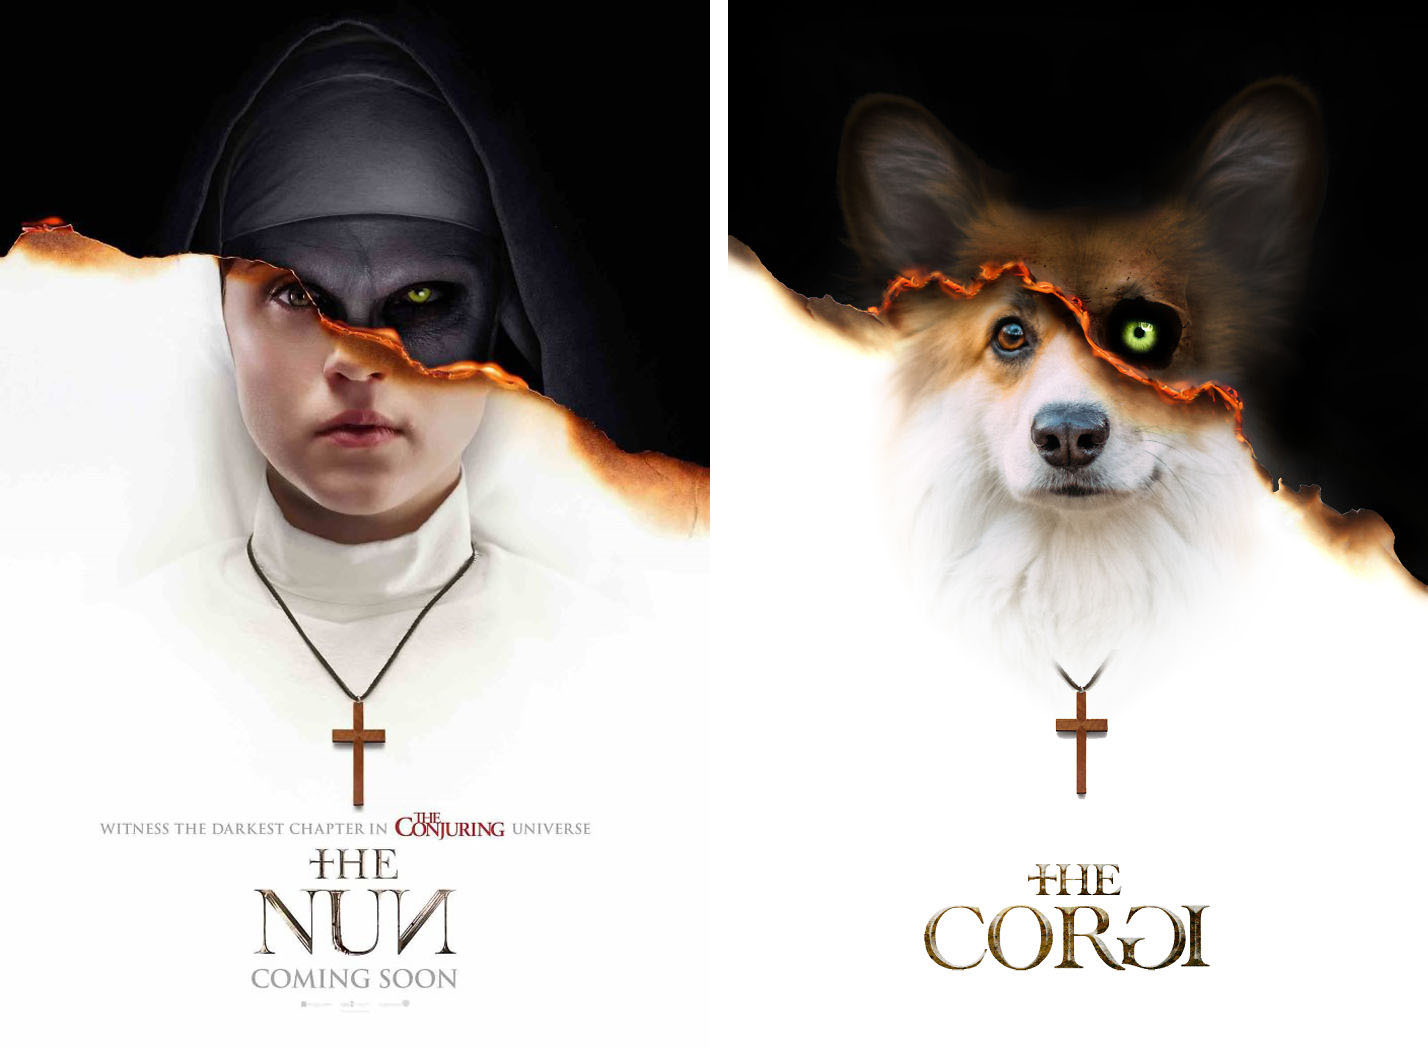 The Nun - The Corgi